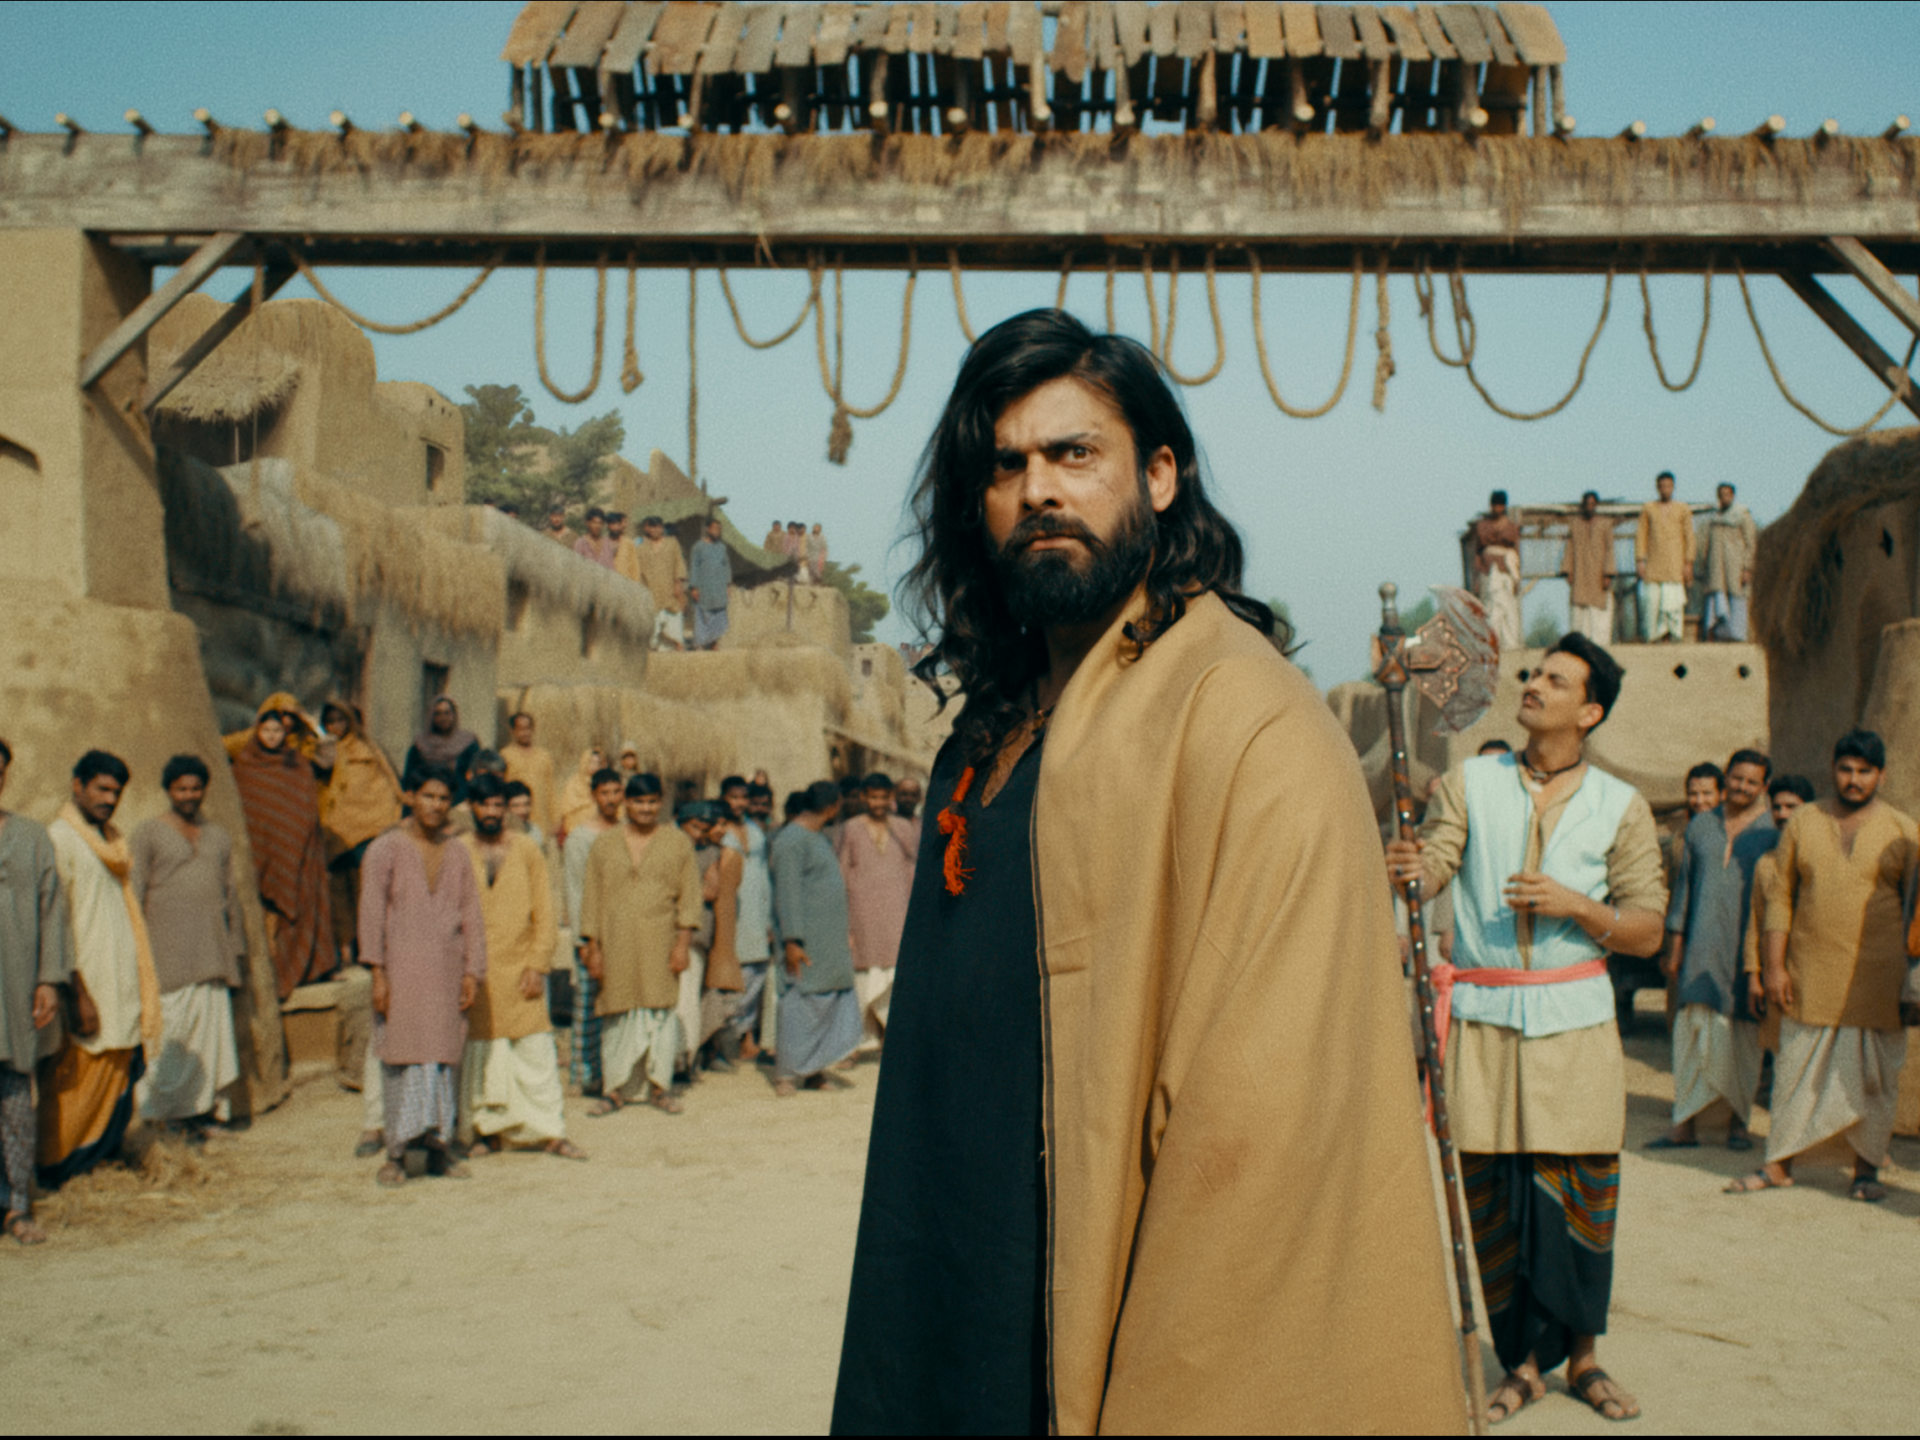 Un film pakistanais sortira en Inde après 11 ans de retour de flamme |  Actualités Arts et Culture